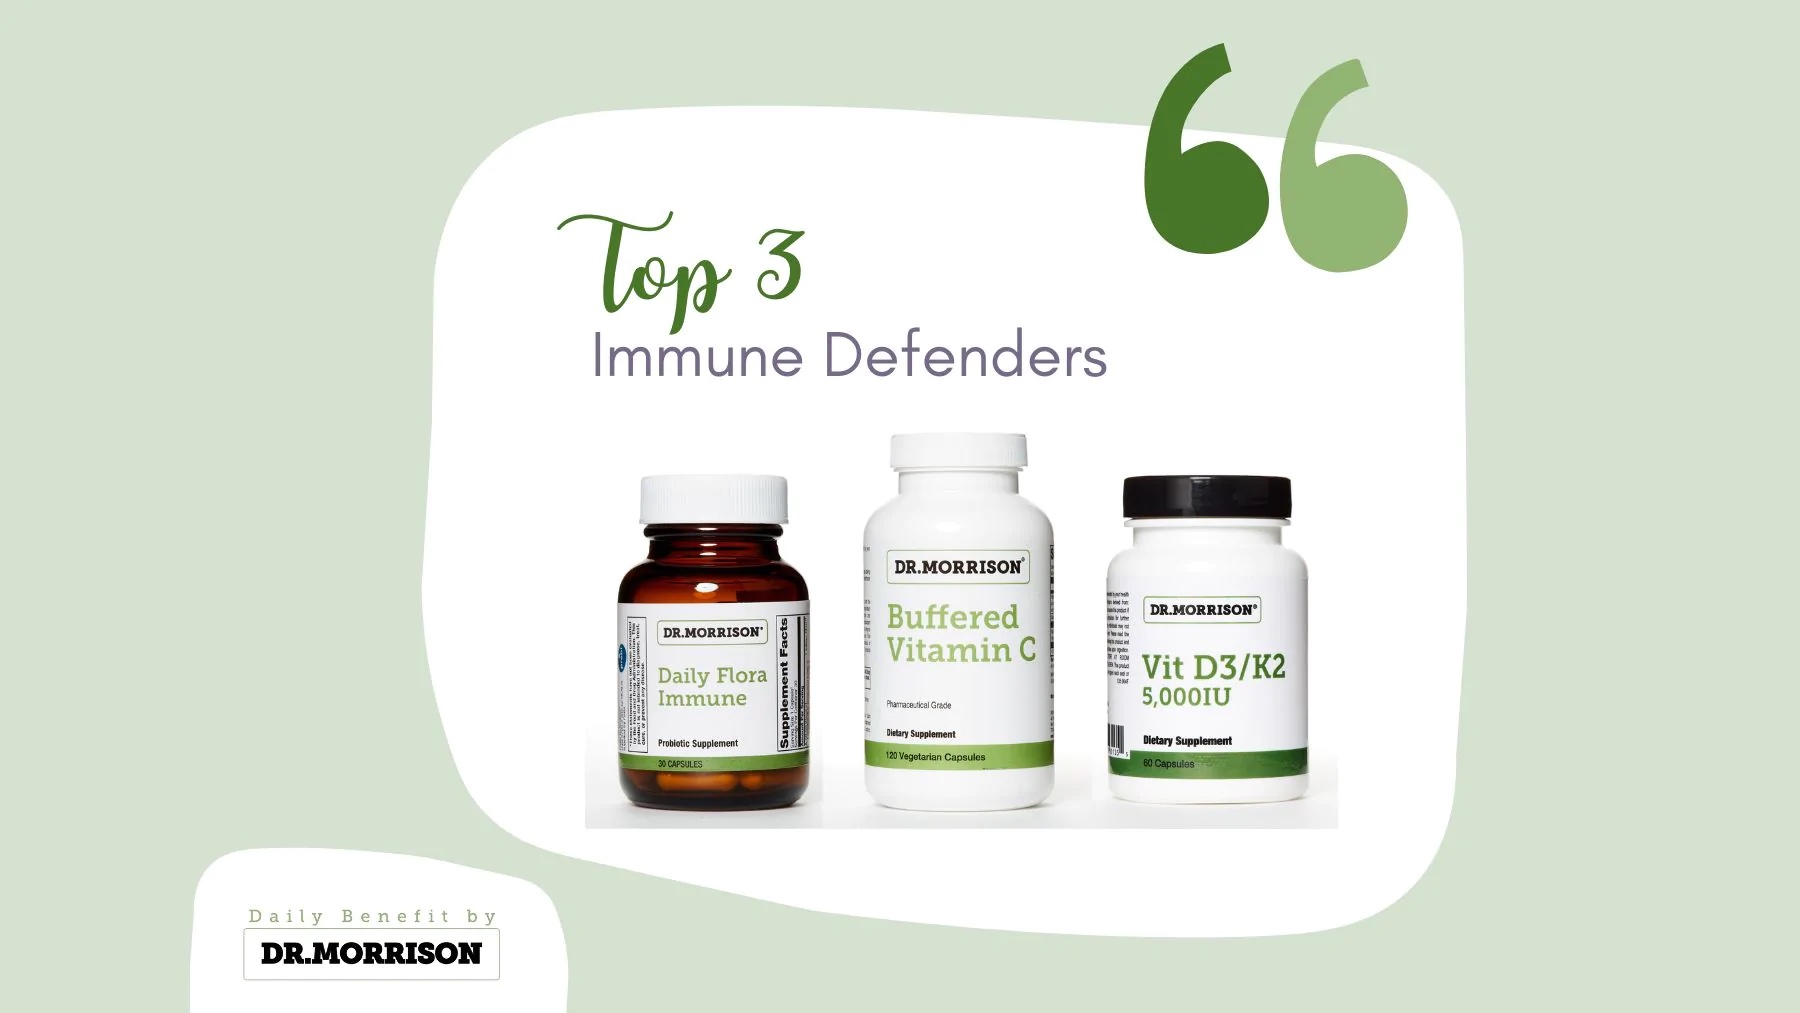 Top 3 Immune Defenders